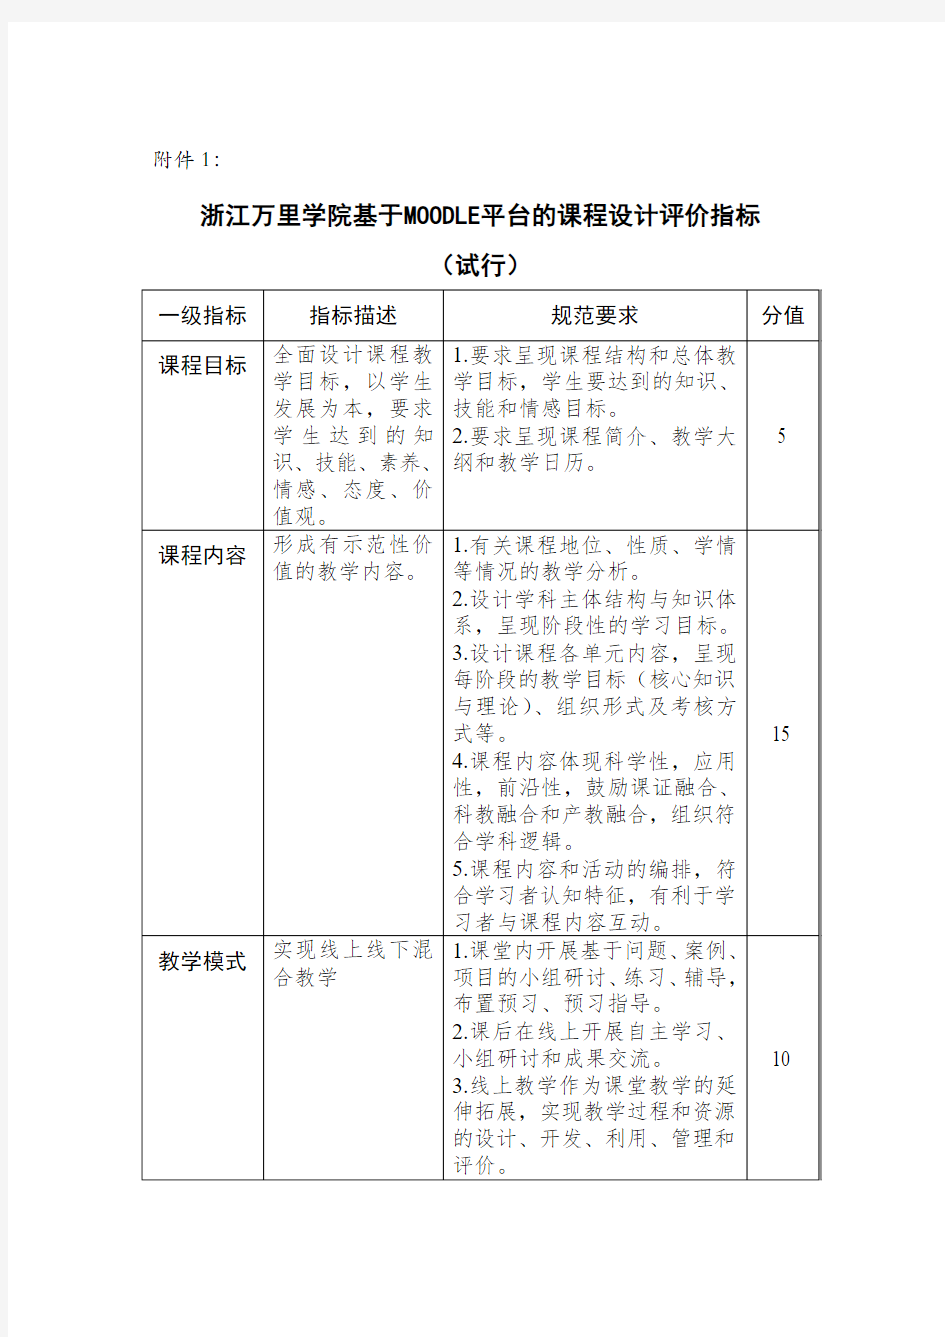 示范建设课程考核与评比实施方案浙江万里学院教务部